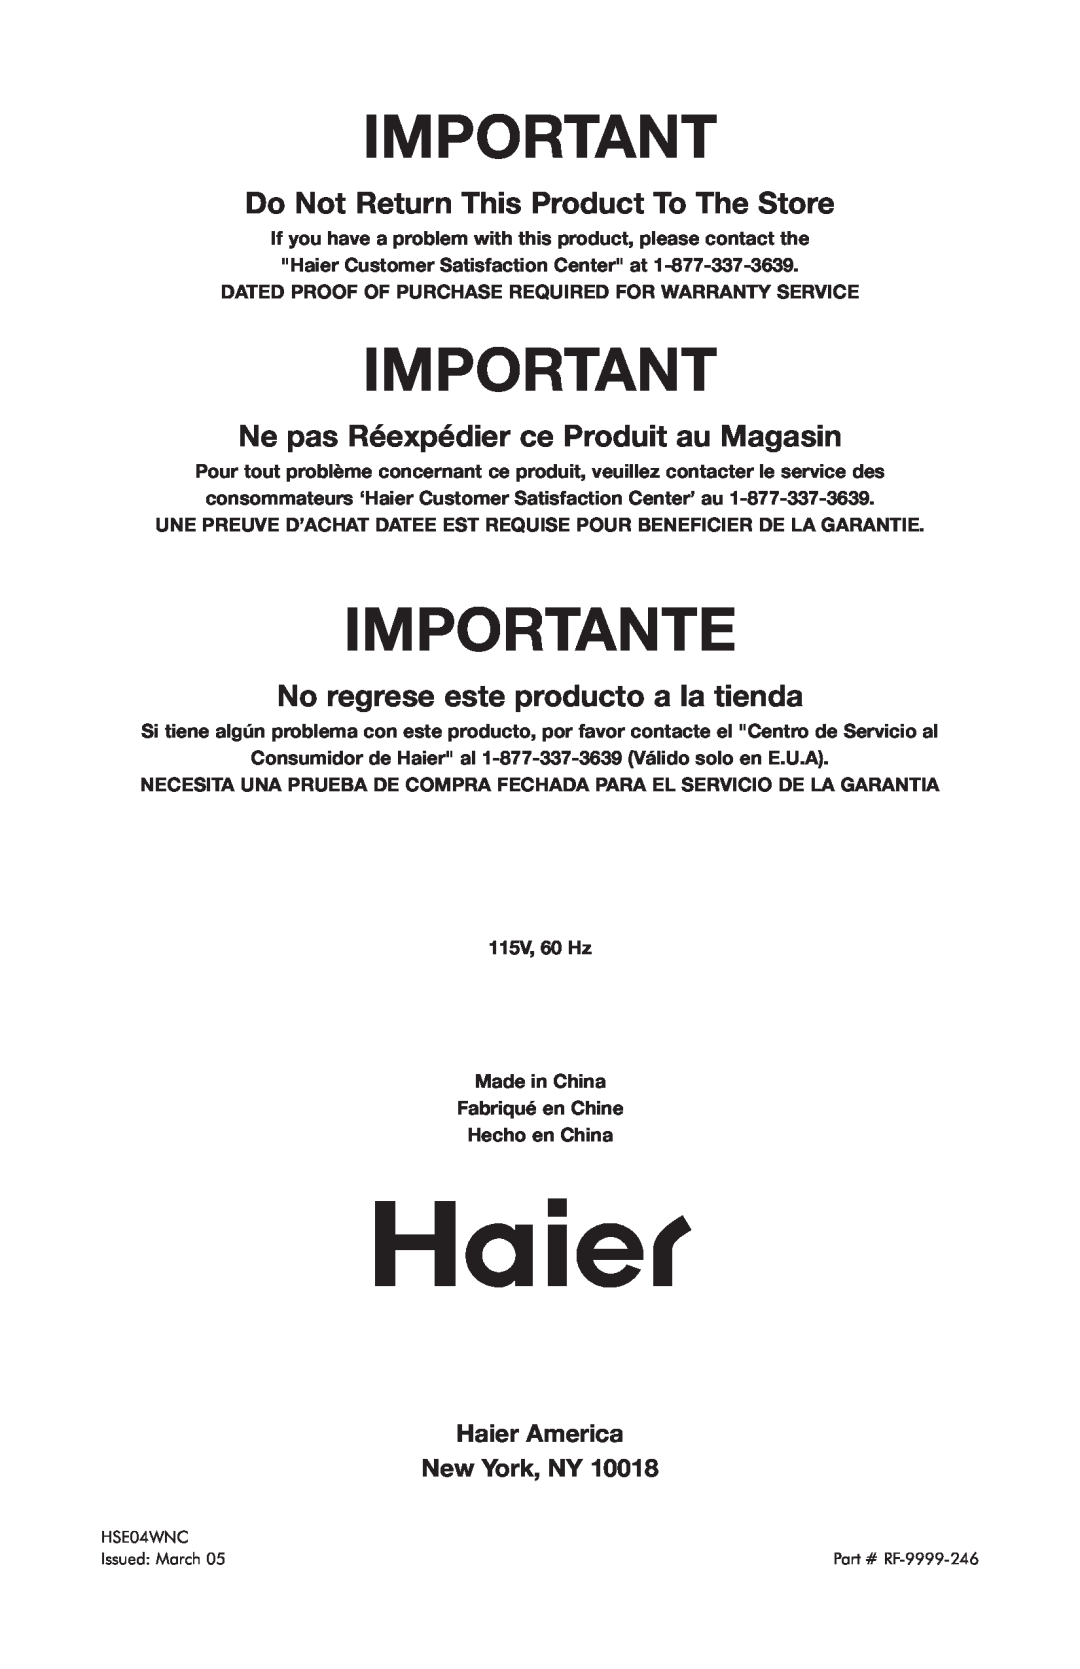 Haier HSE04WNC user manual Importante, Do Not Return This Product To The Store, Ne pas Réexpédier ce Produit au Magasin 